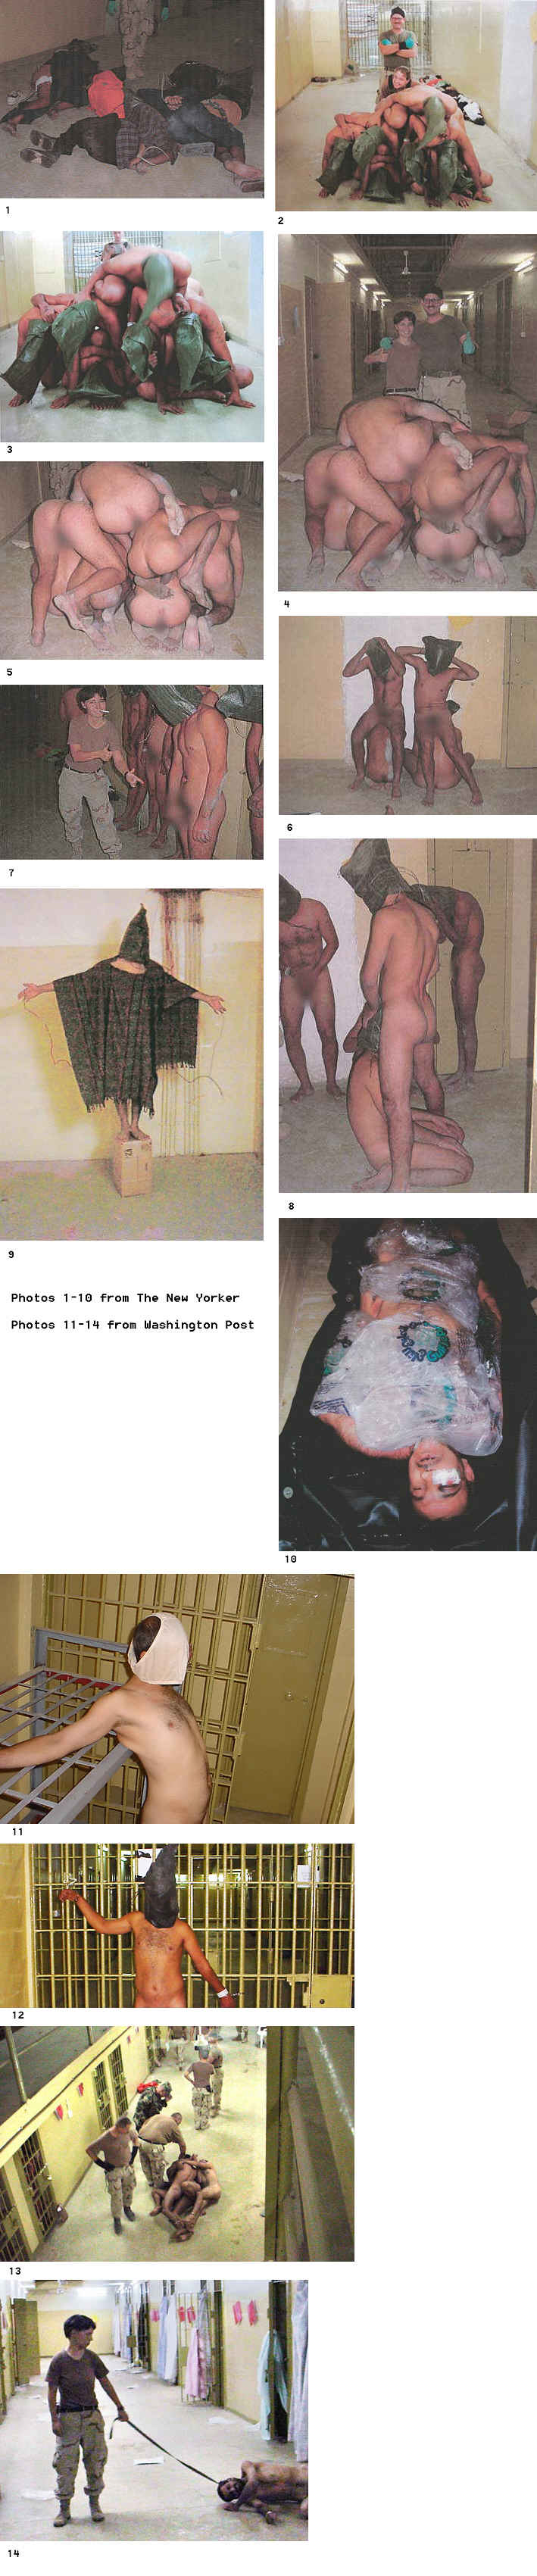 Abu Ghraib torture photos